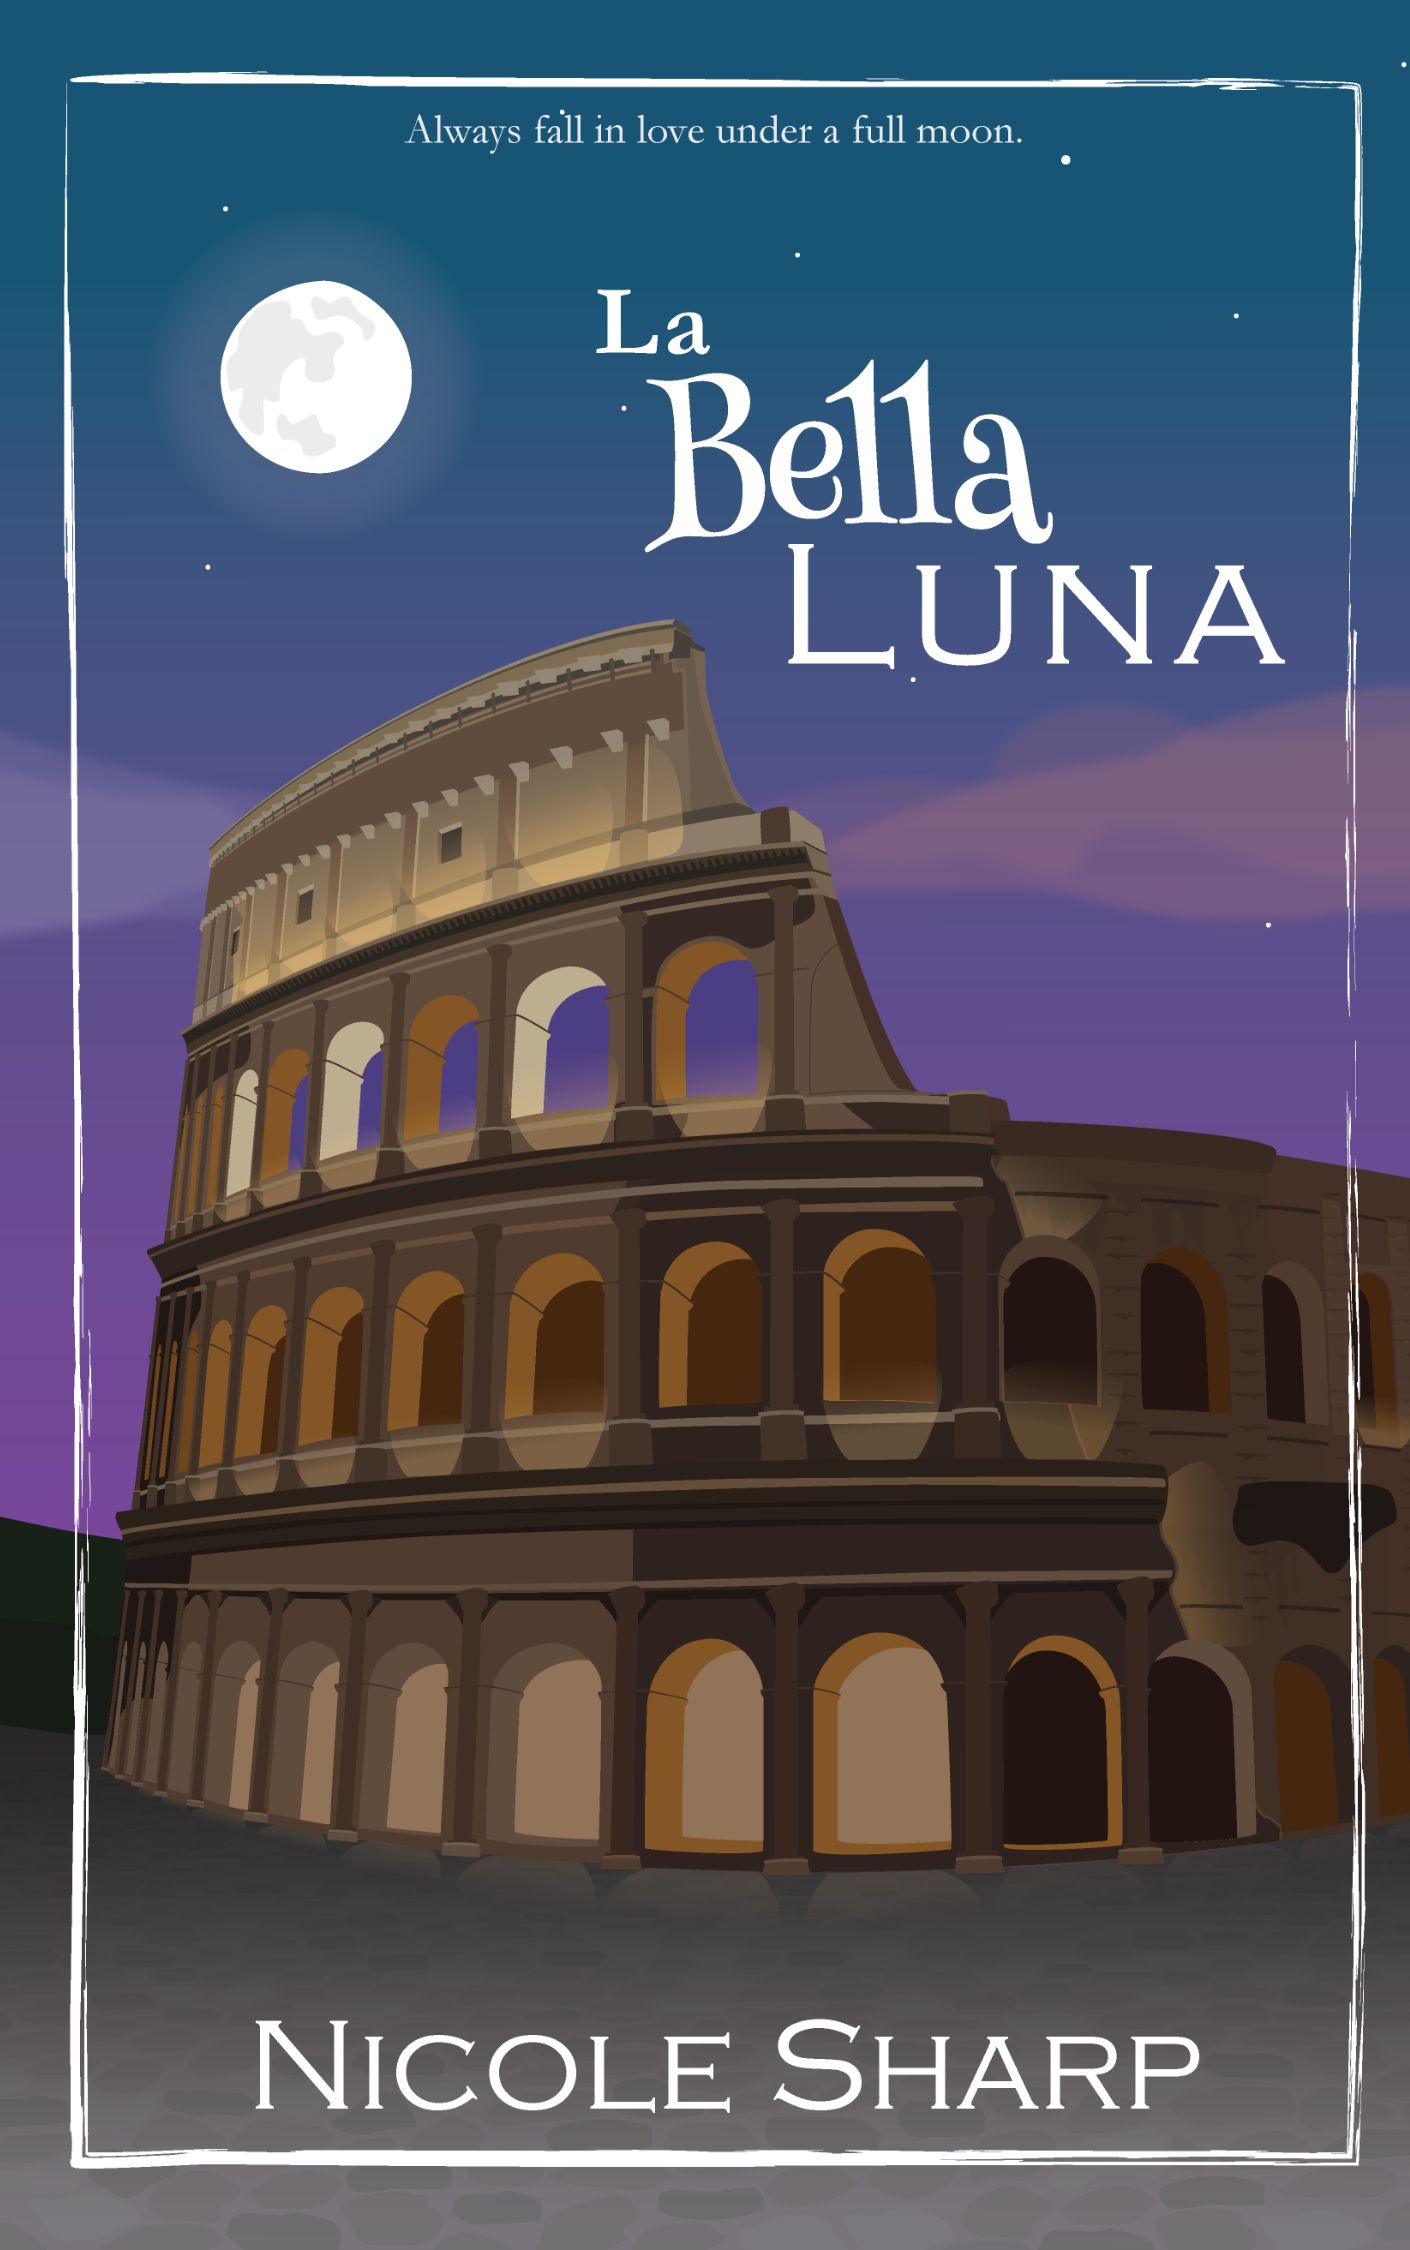 Book Blitz: La Bella Luna by Nicole Sharp